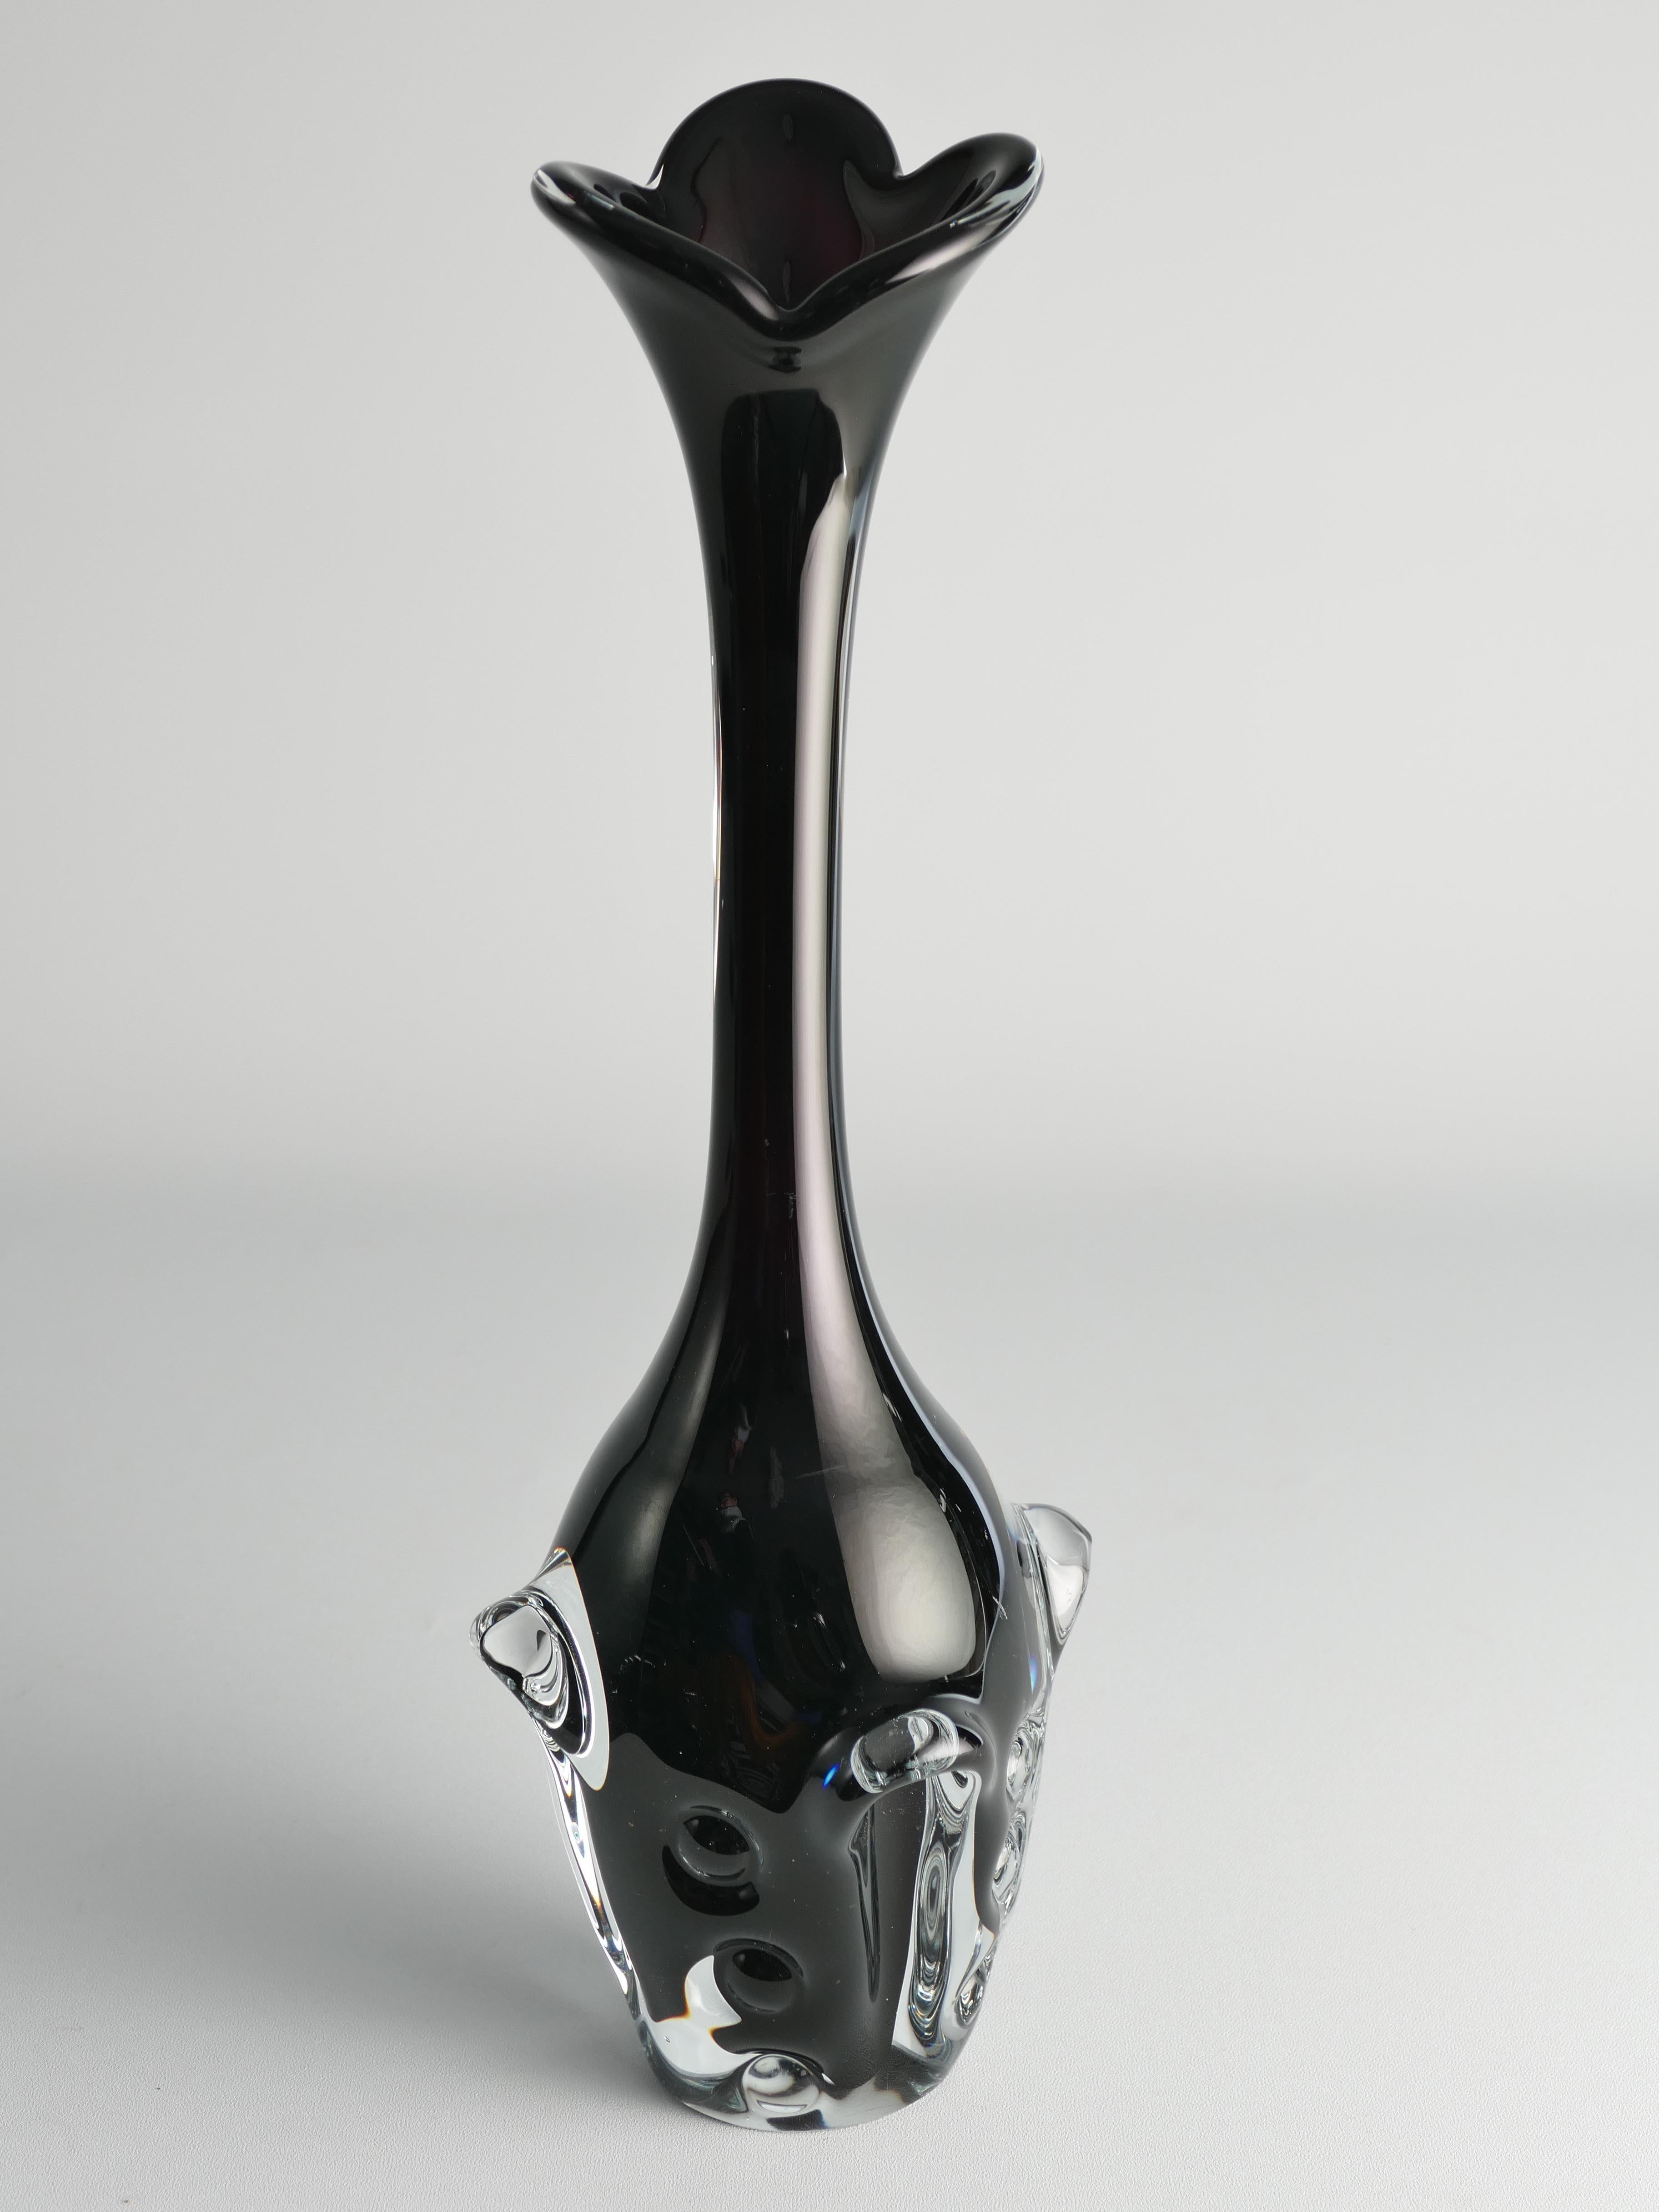 Börne Augustssons Kunstfertigkeit zeigt sich in dieser modernen schwedischen Glasvase, die er für Åseda Glassworks entworfen hat. Dieses sorgfältig mundgeblasene, skandinavisch-moderne Stück zeigt Augustssons organisches Designempfinden. Die Vase